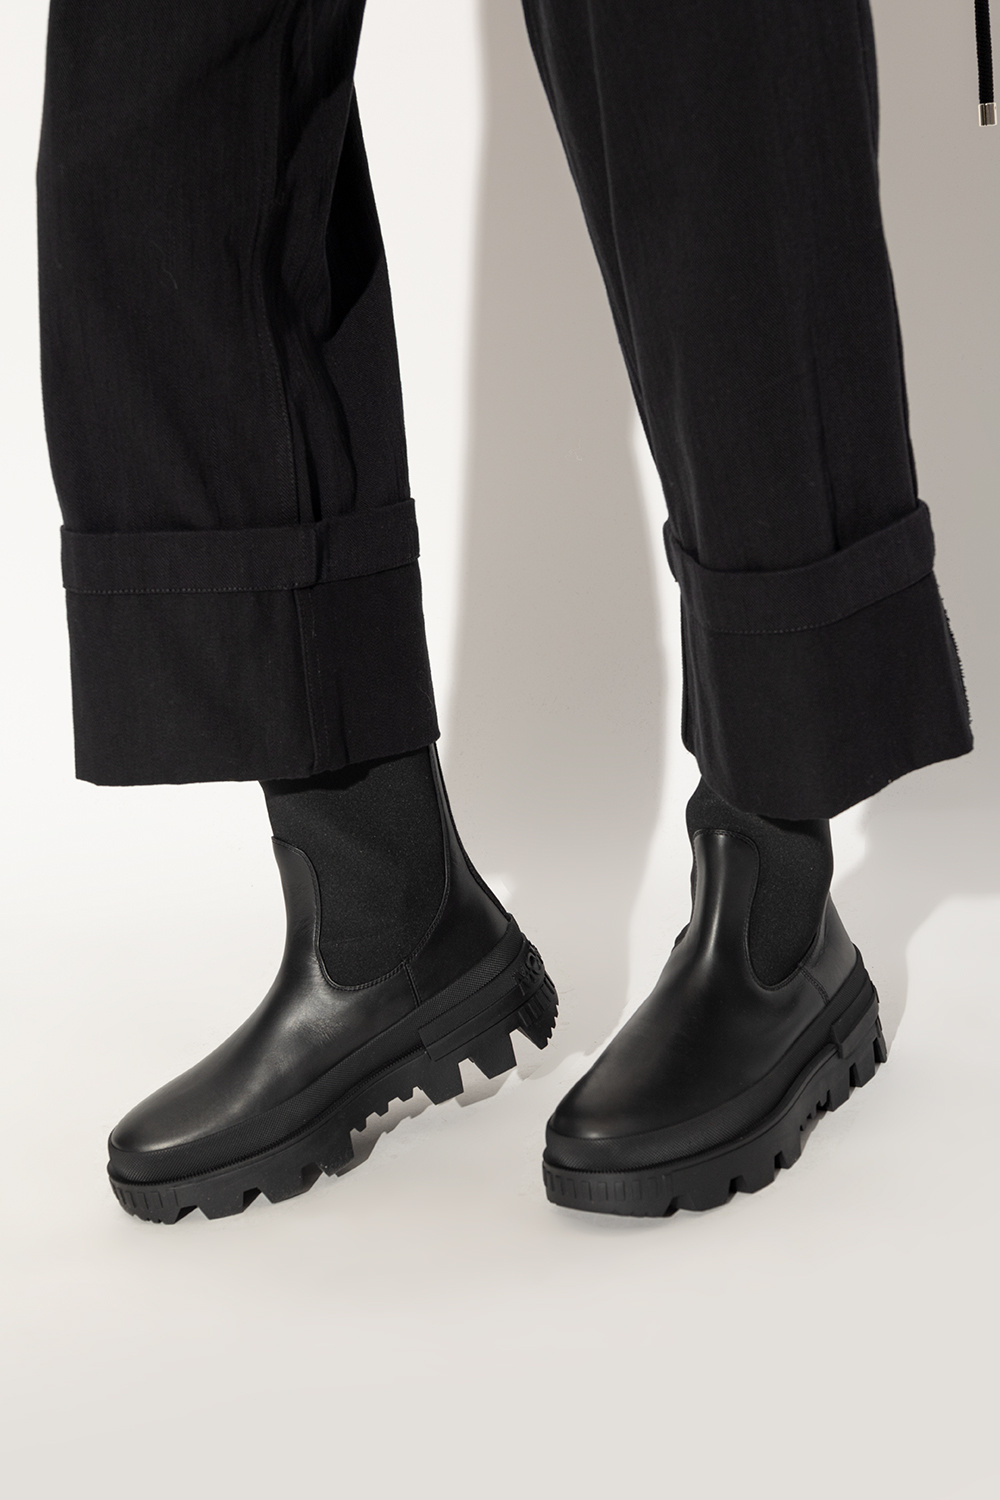 Moncler Neue Chelsea Boots - Black